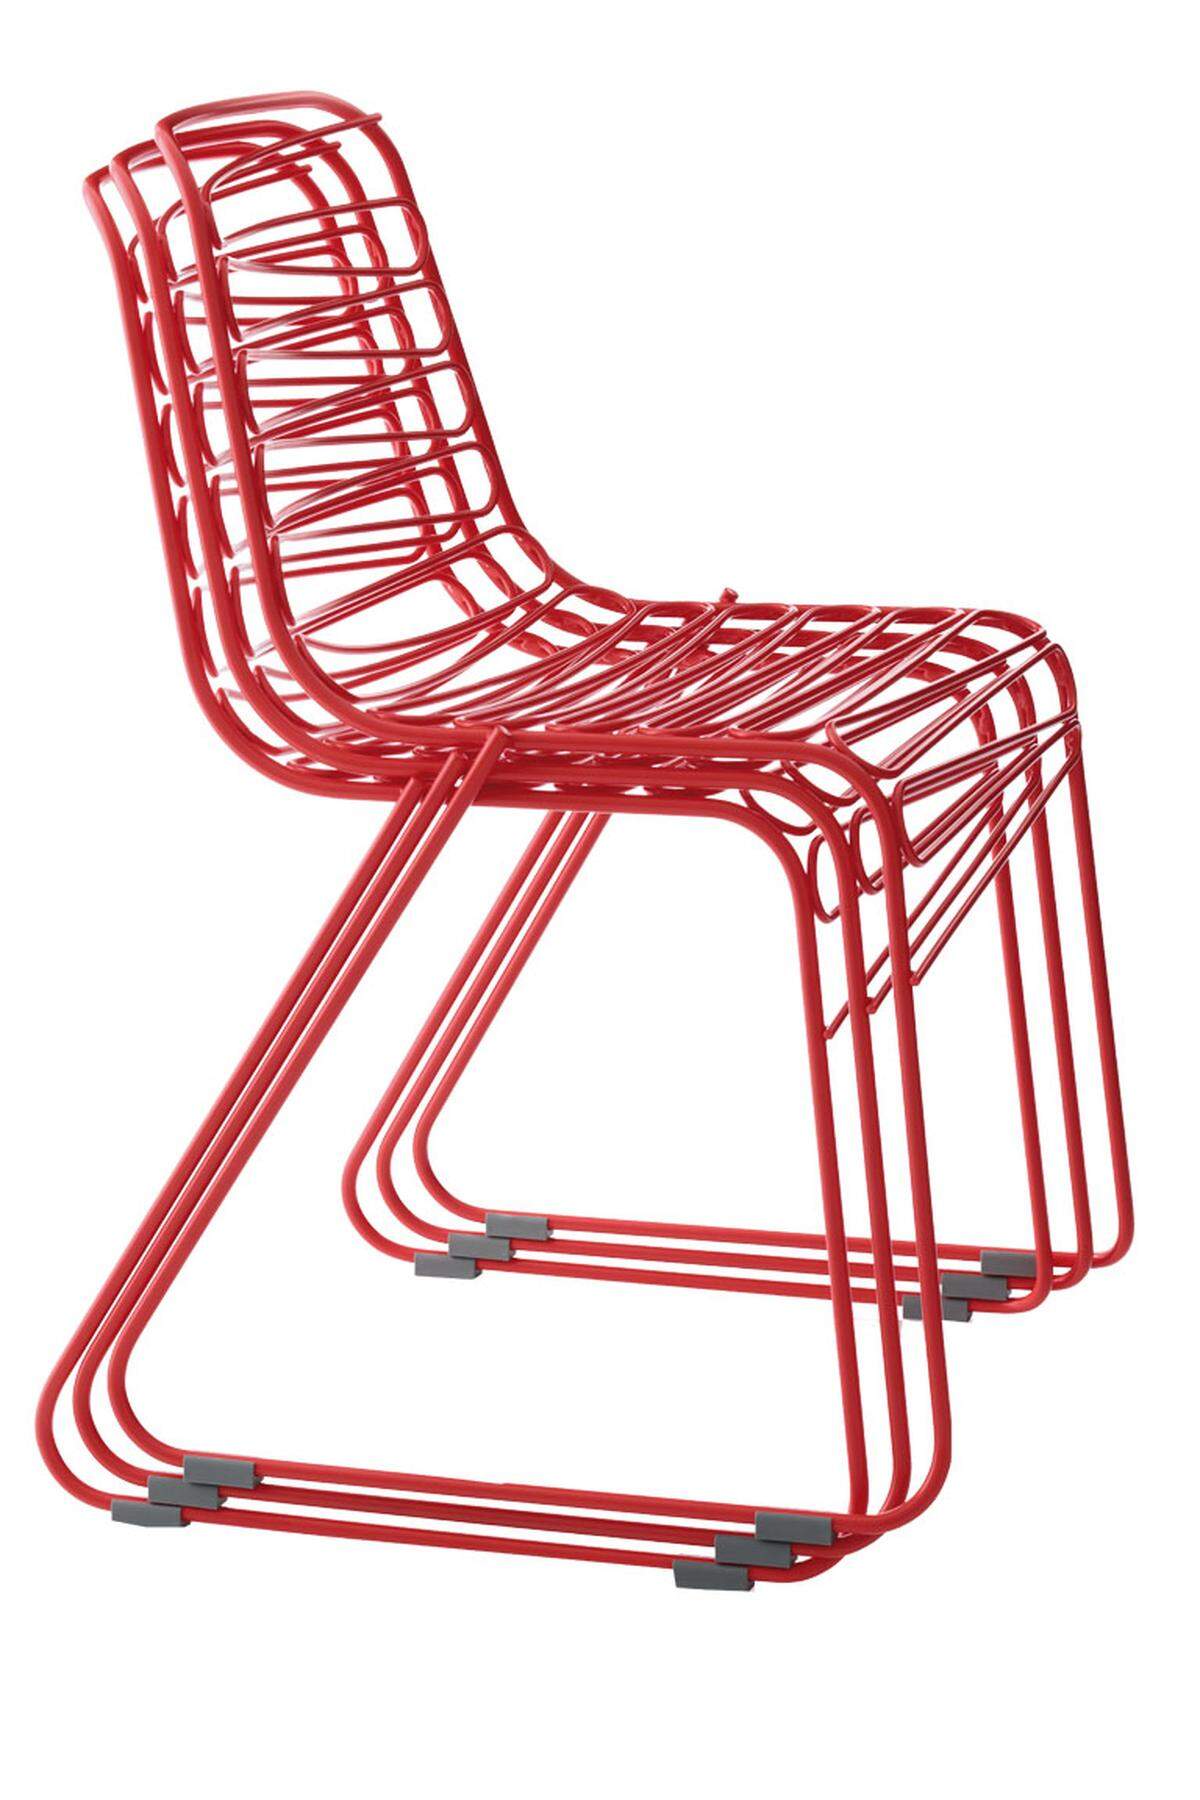 Mit Stuhl Flux aus Stahlrohr (rostschutzbehandelt) lassen sich bestens Türme bauen. Design von Jerszy Seymour, www.magisdesign.com